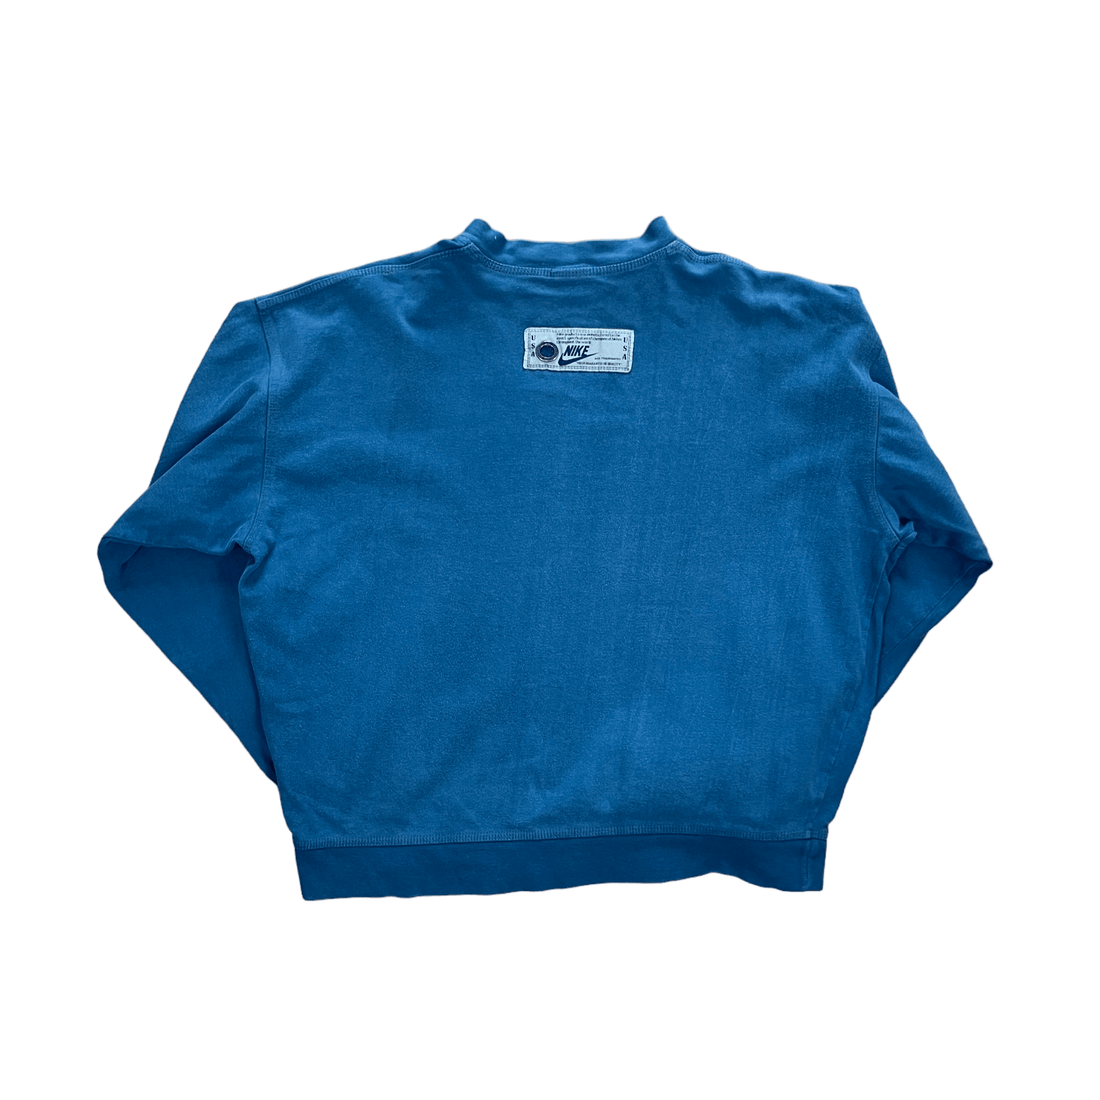 Women’s Vintage 90s Blue Nike Sweatshirt - Large - The Streetwear Studio